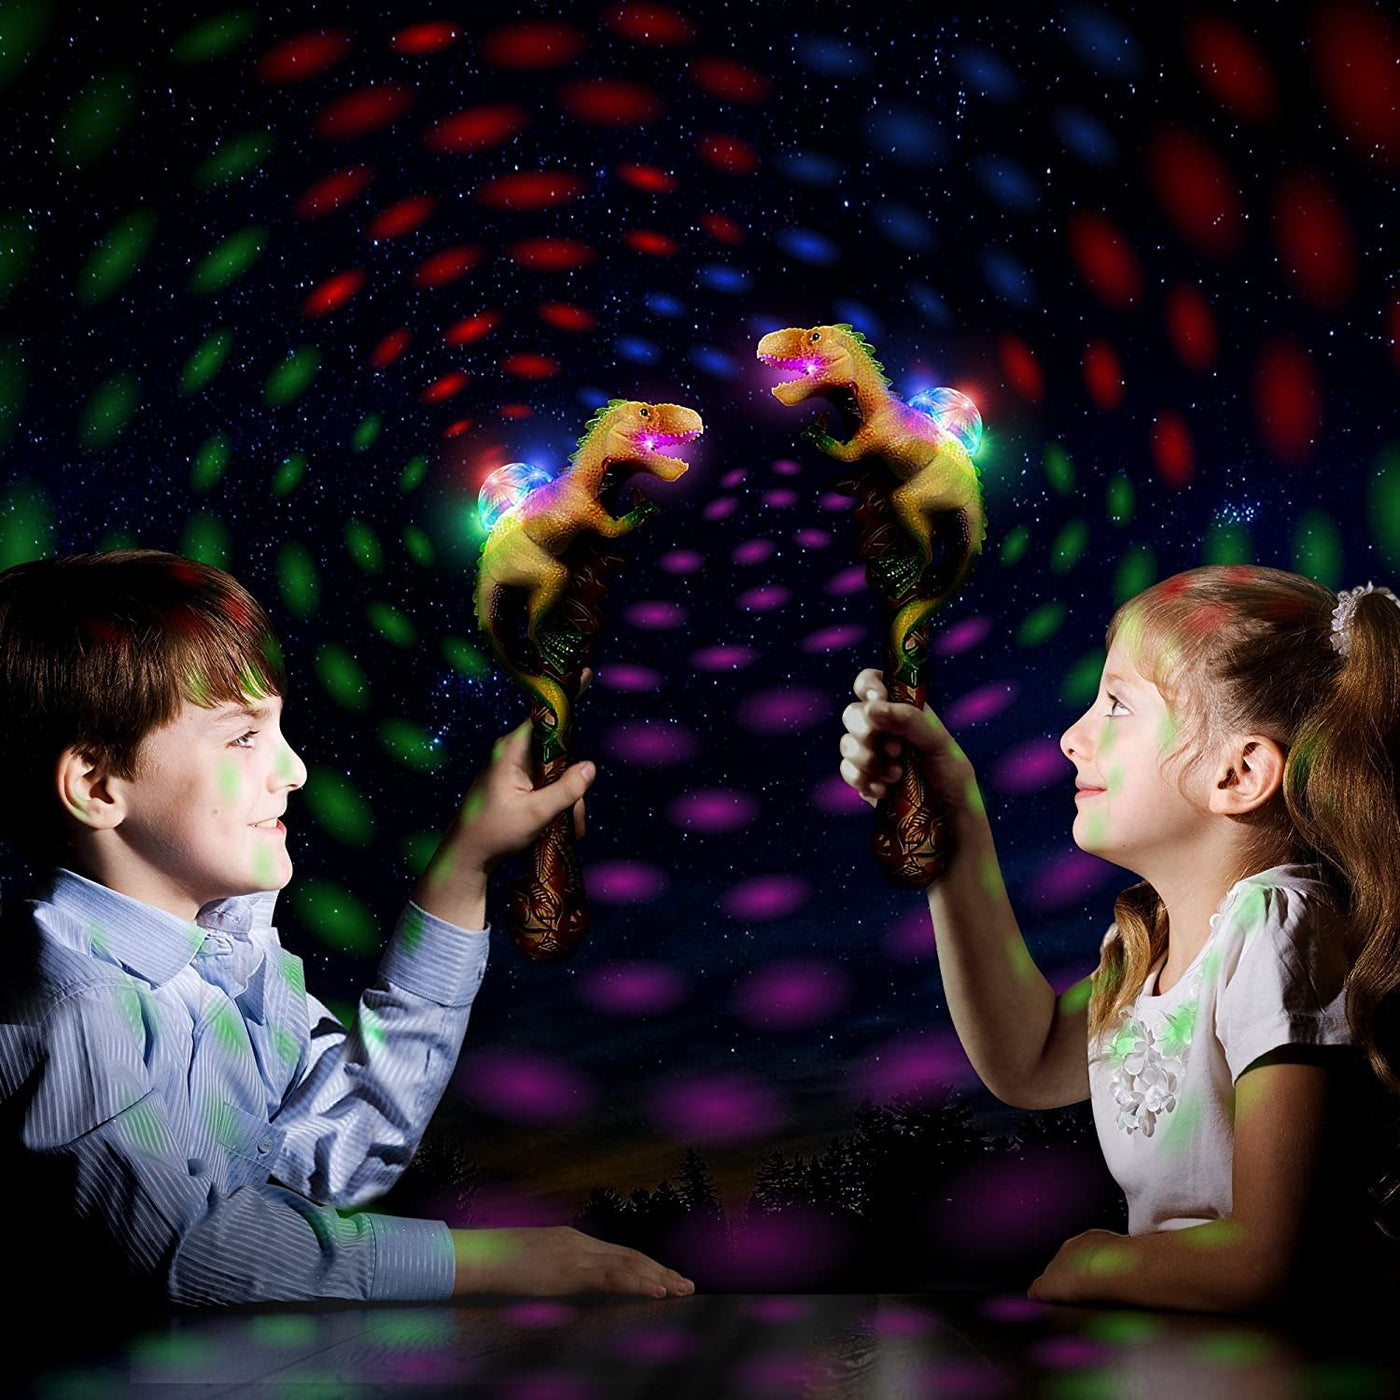 ArtCreativity T-Rex LED Light Up Dinosaur Wand Growling Sound Effects, Light Up Wand for Kids, Light Up Toys for Toddlers, Light Up Party Favors for Kids, Easter Basket Stuffers, Toys for Kids Ages 3+